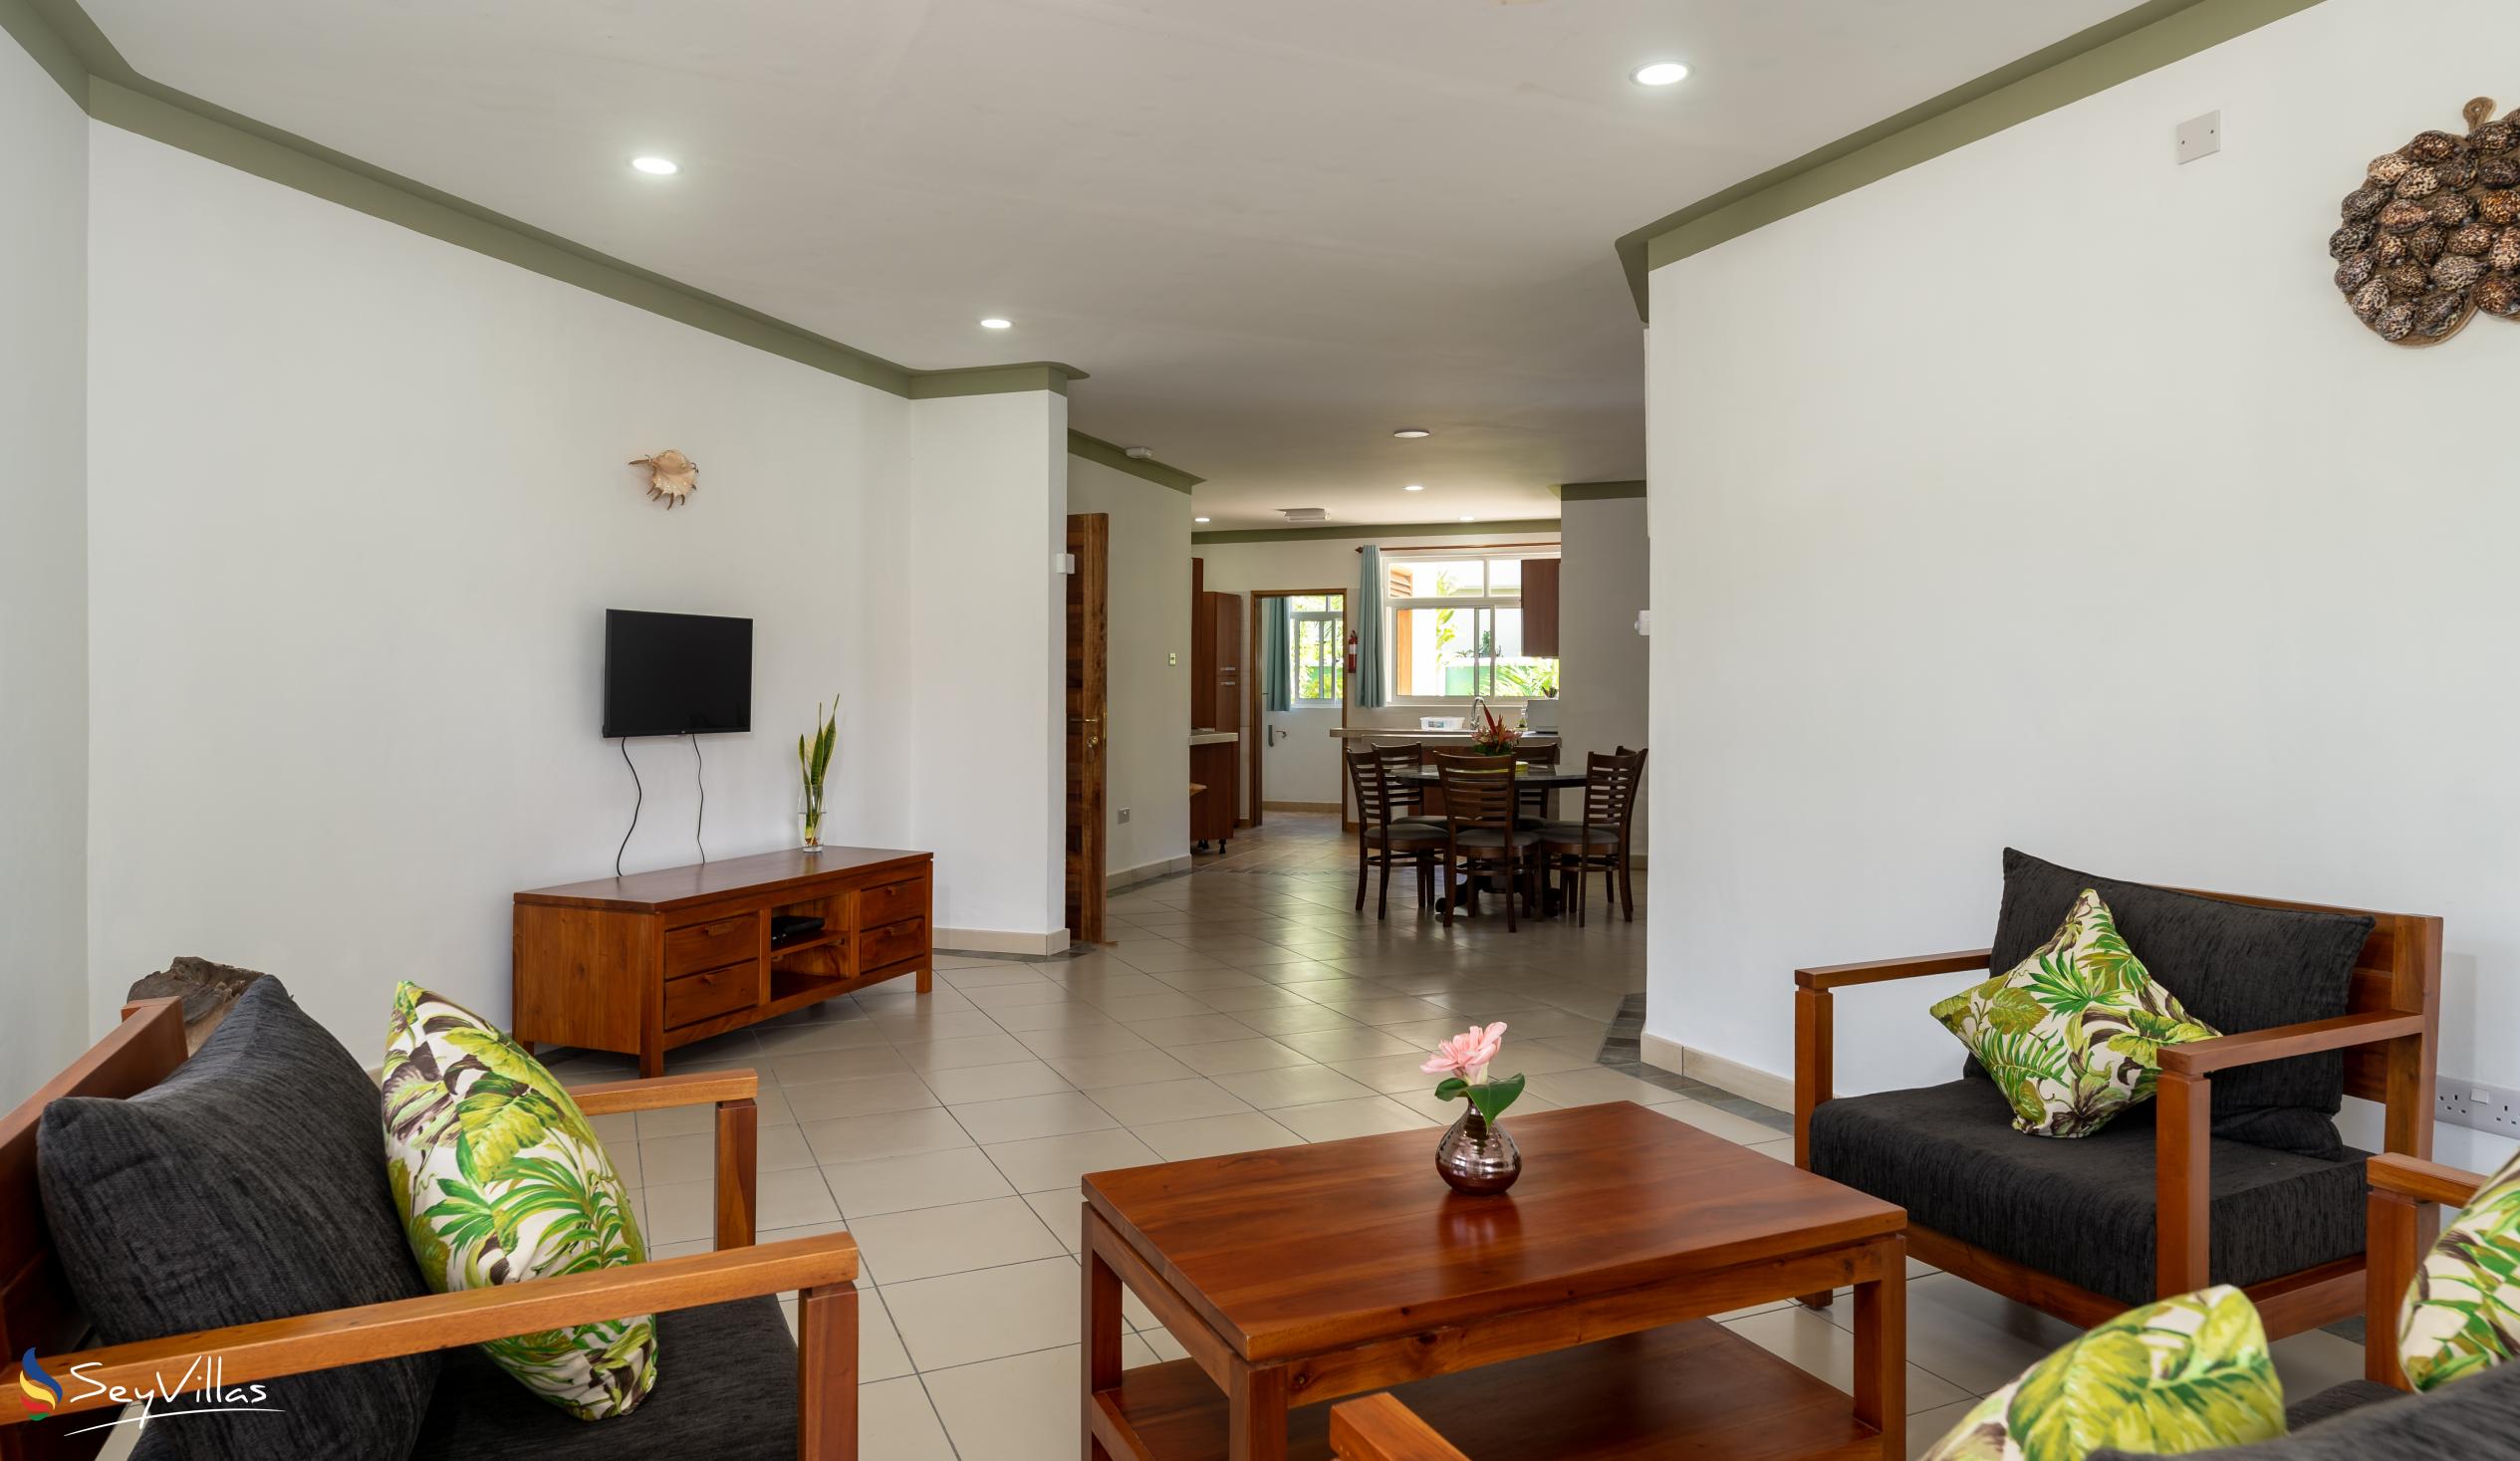 Foto 36: 340 Degrees Mountain View Apartments - Appartement avec vue sur le jardin - 1 Chambre - Mahé (Seychelles)